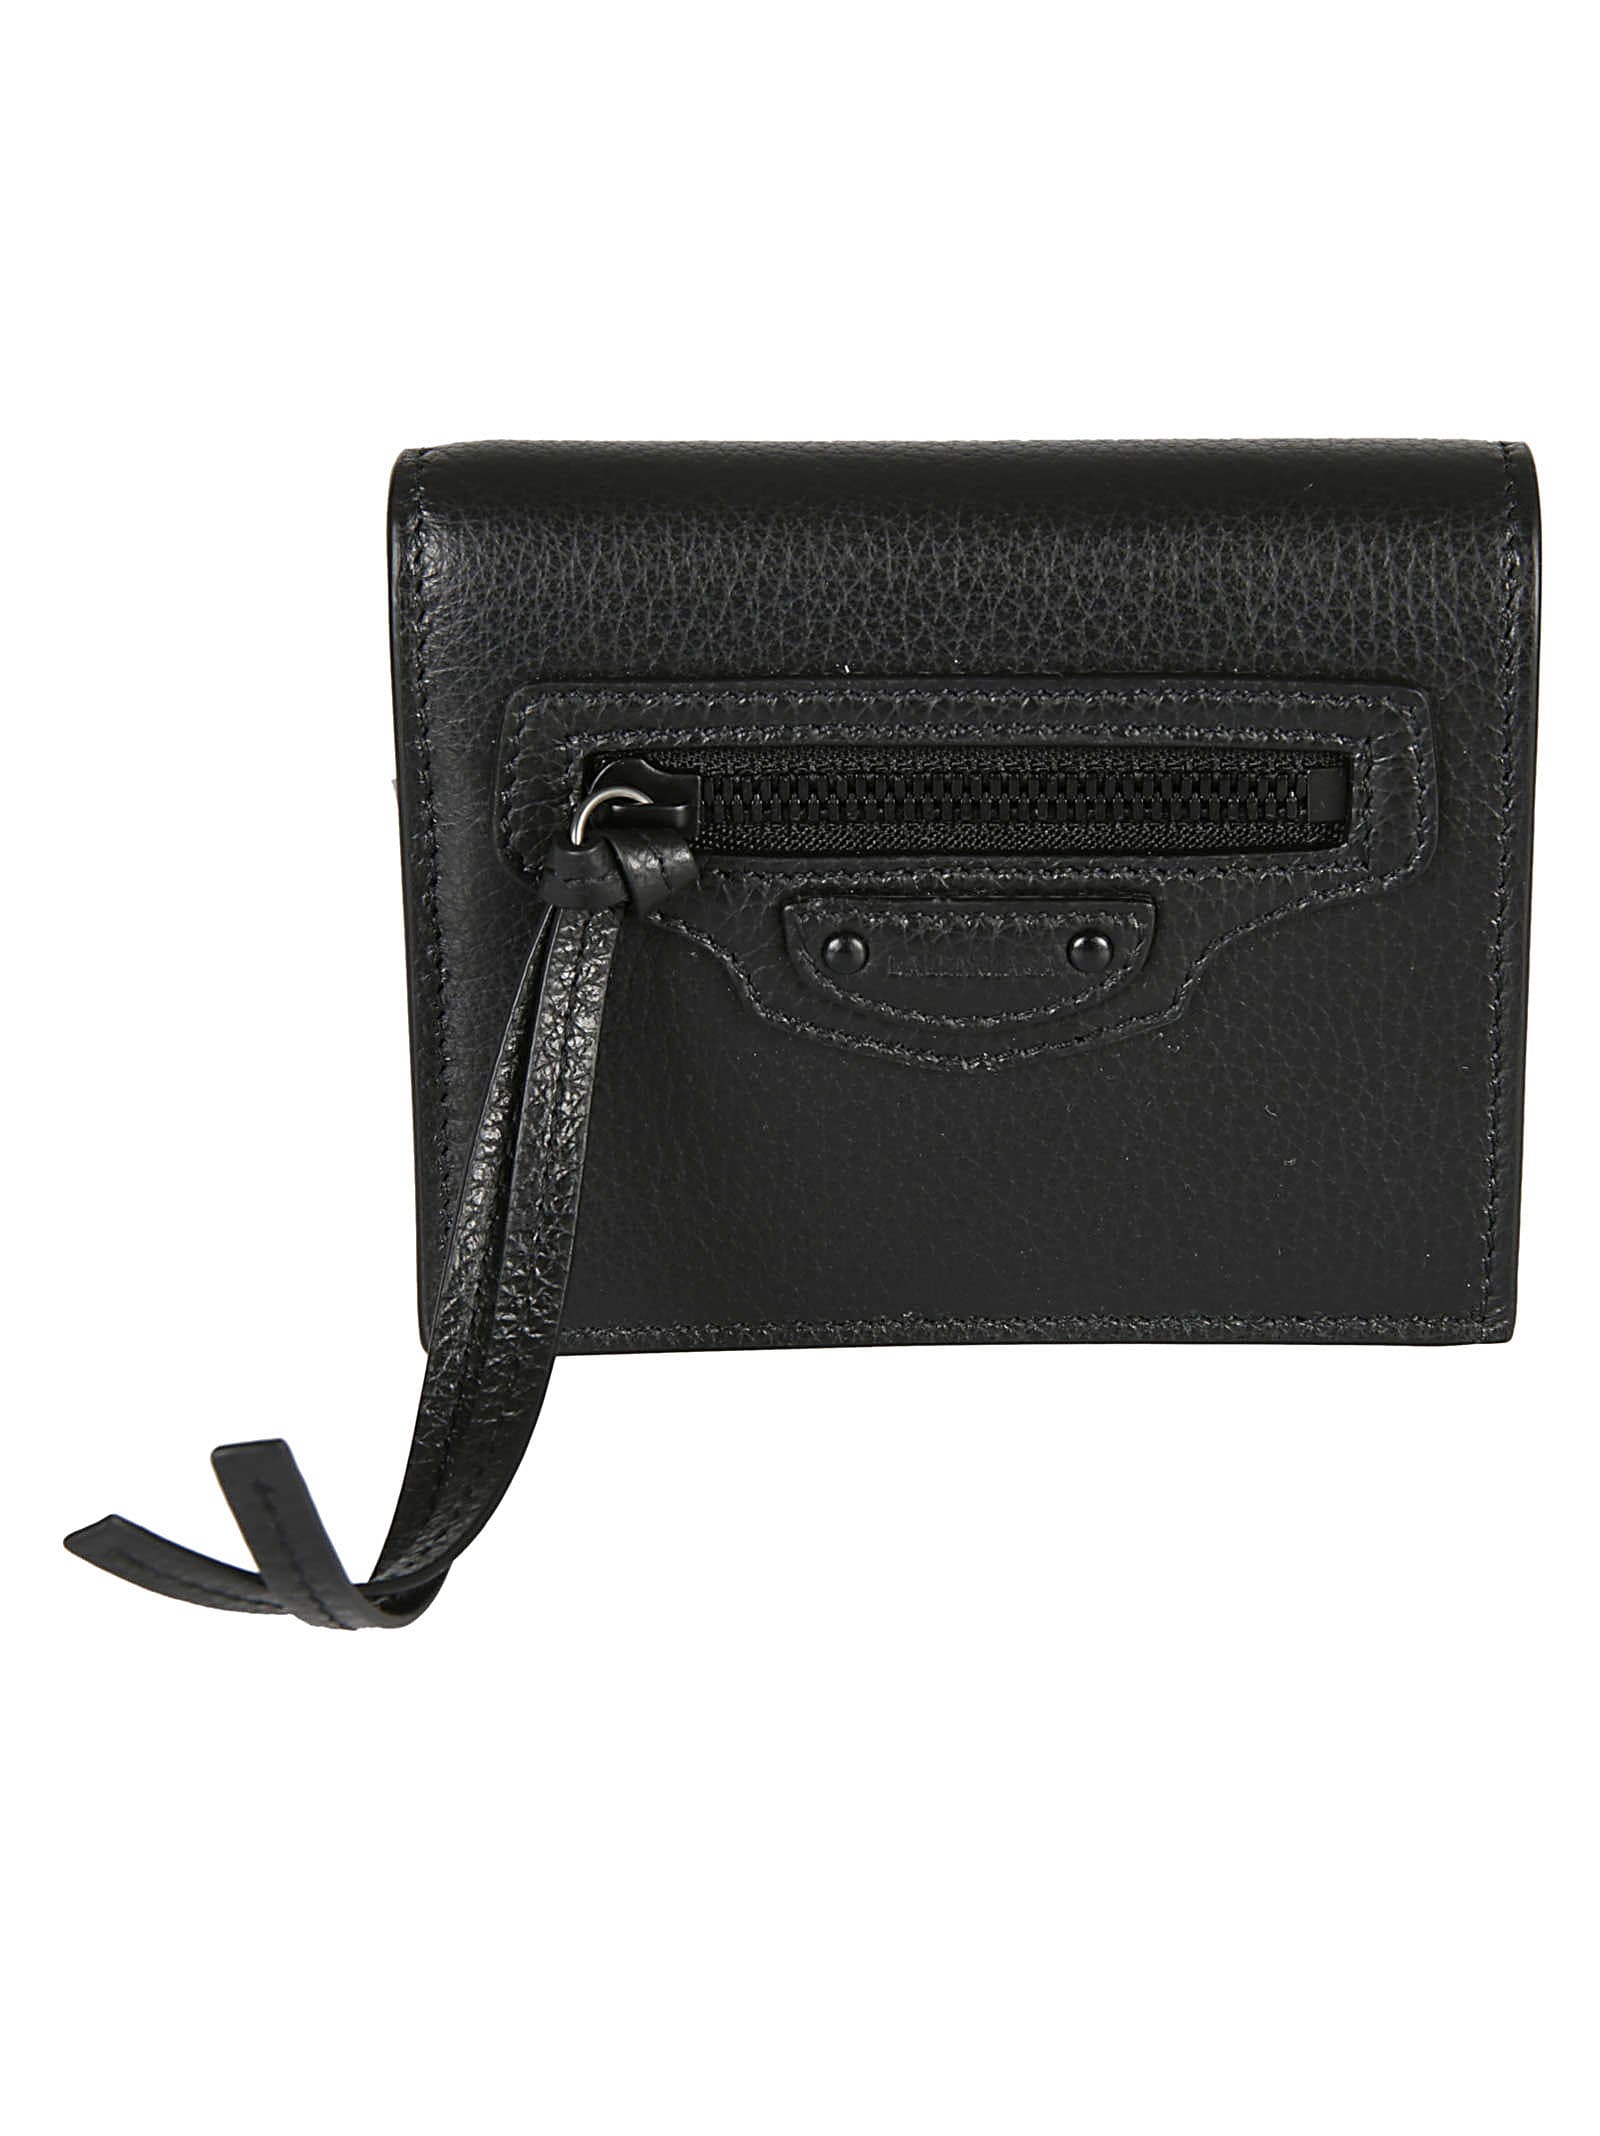 Balenciaga Front Zip Wallet